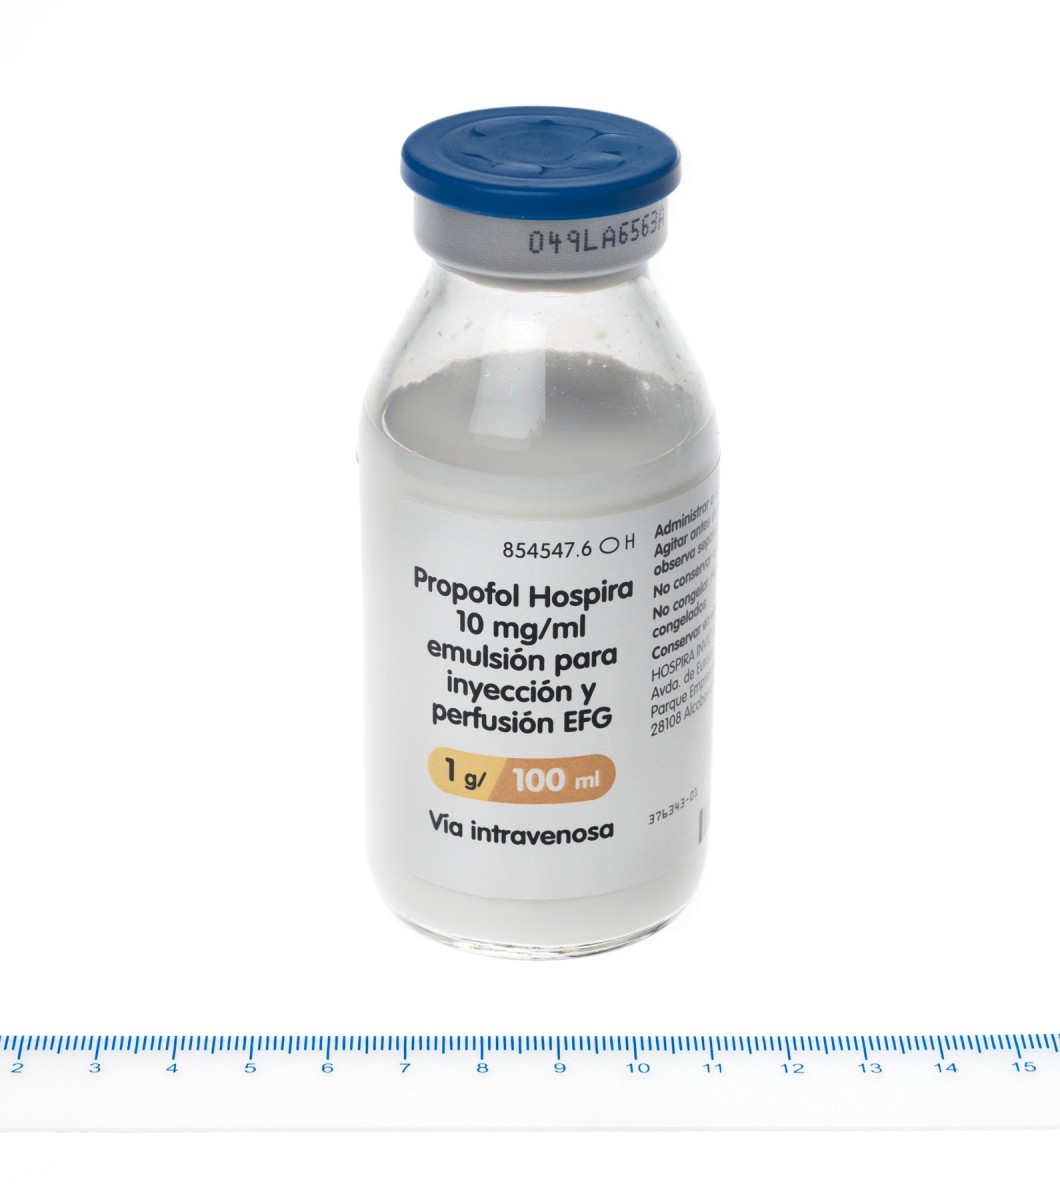 PROPOFOL HOSPIRA 10 mg/ml EMULSION PARA INYECCION Y PERFUSION EFG, 1 vial de 50 ml fotografía de la forma farmacéutica.